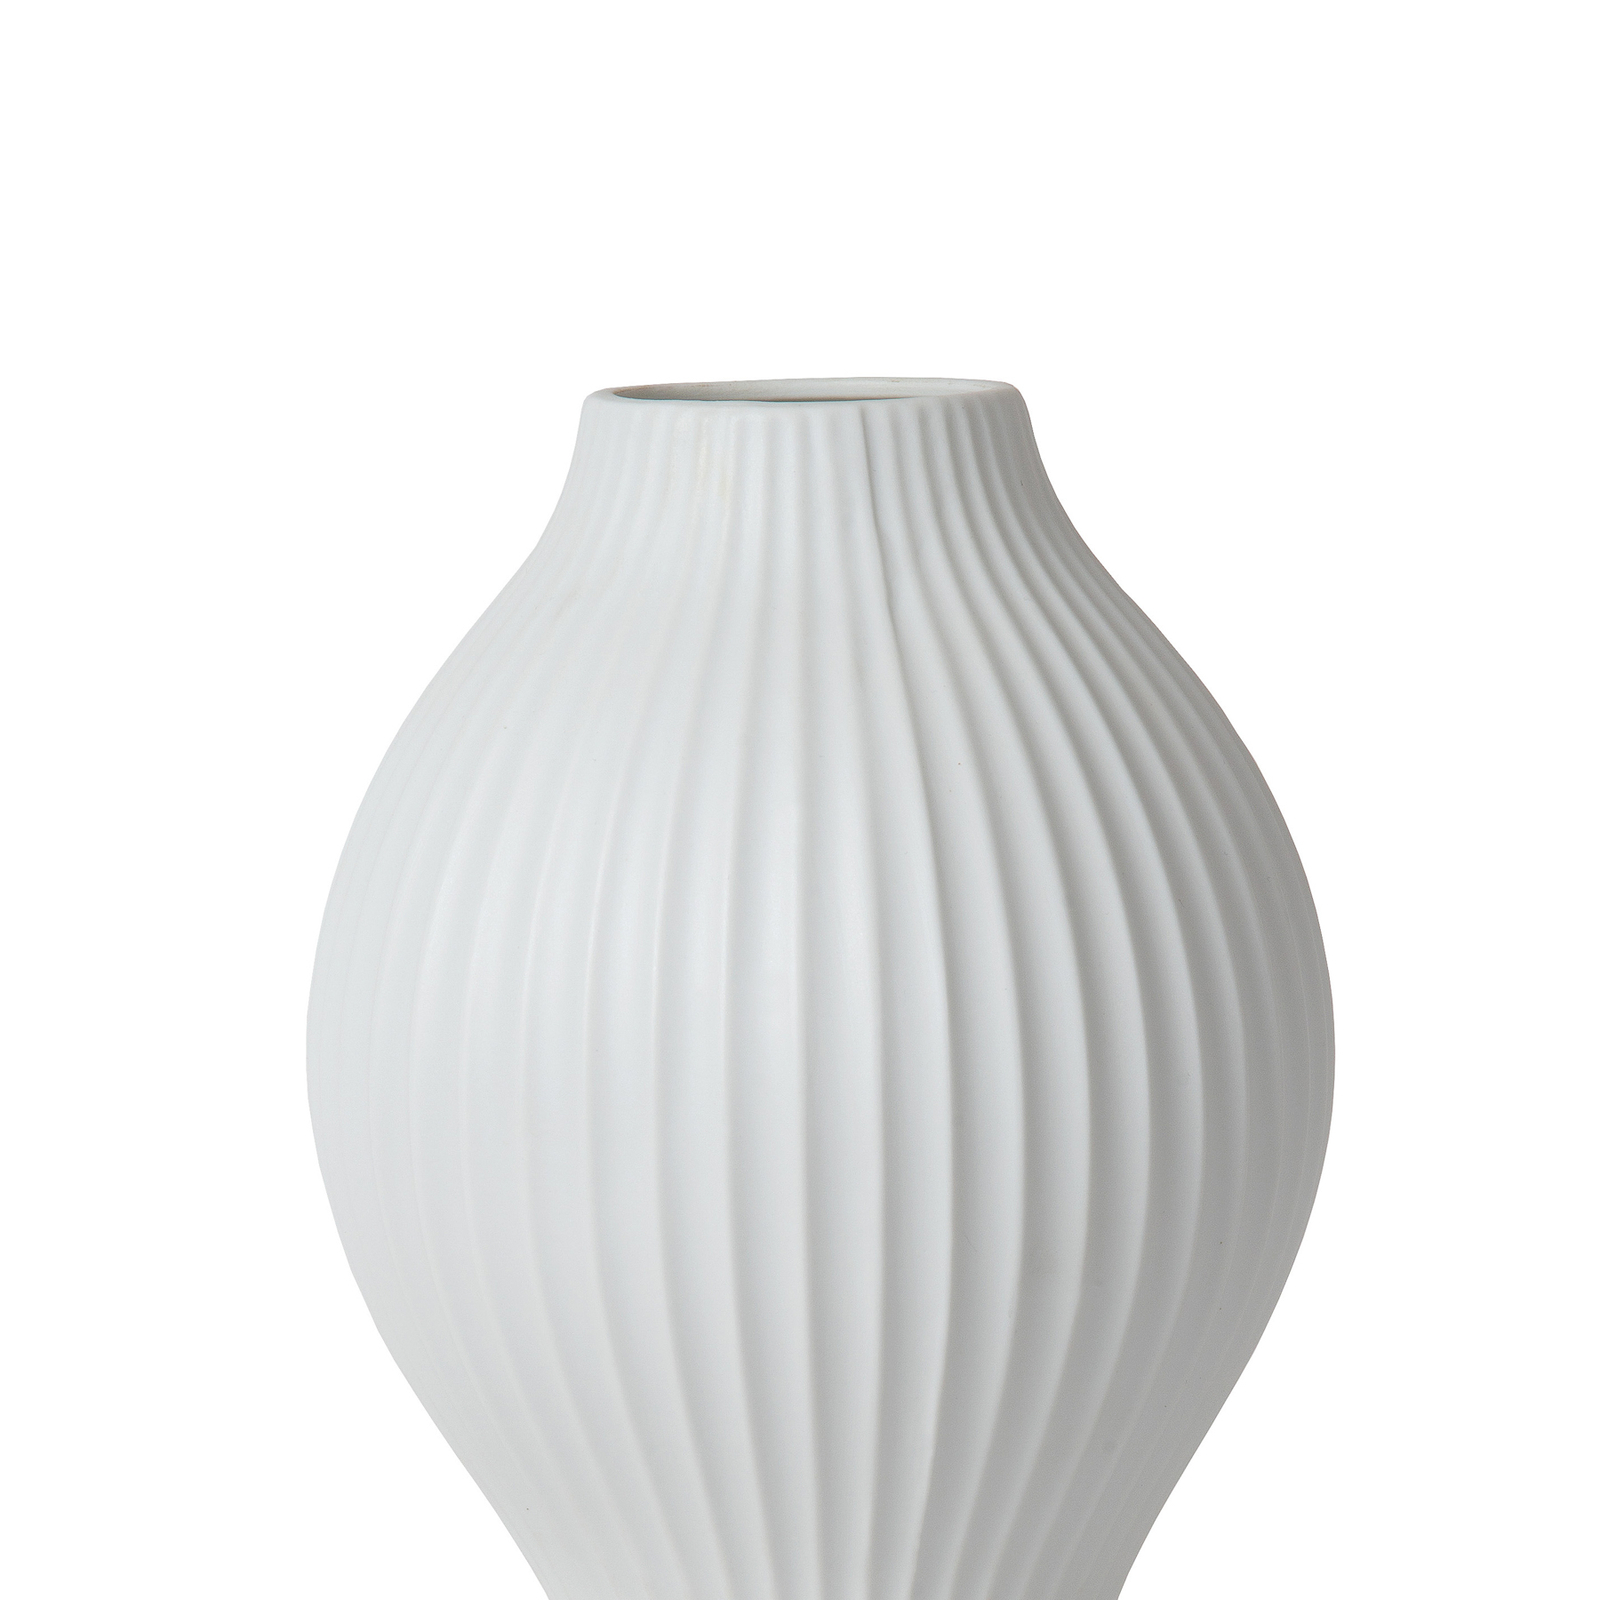 Momoro porcelain table lamp, 40 cm